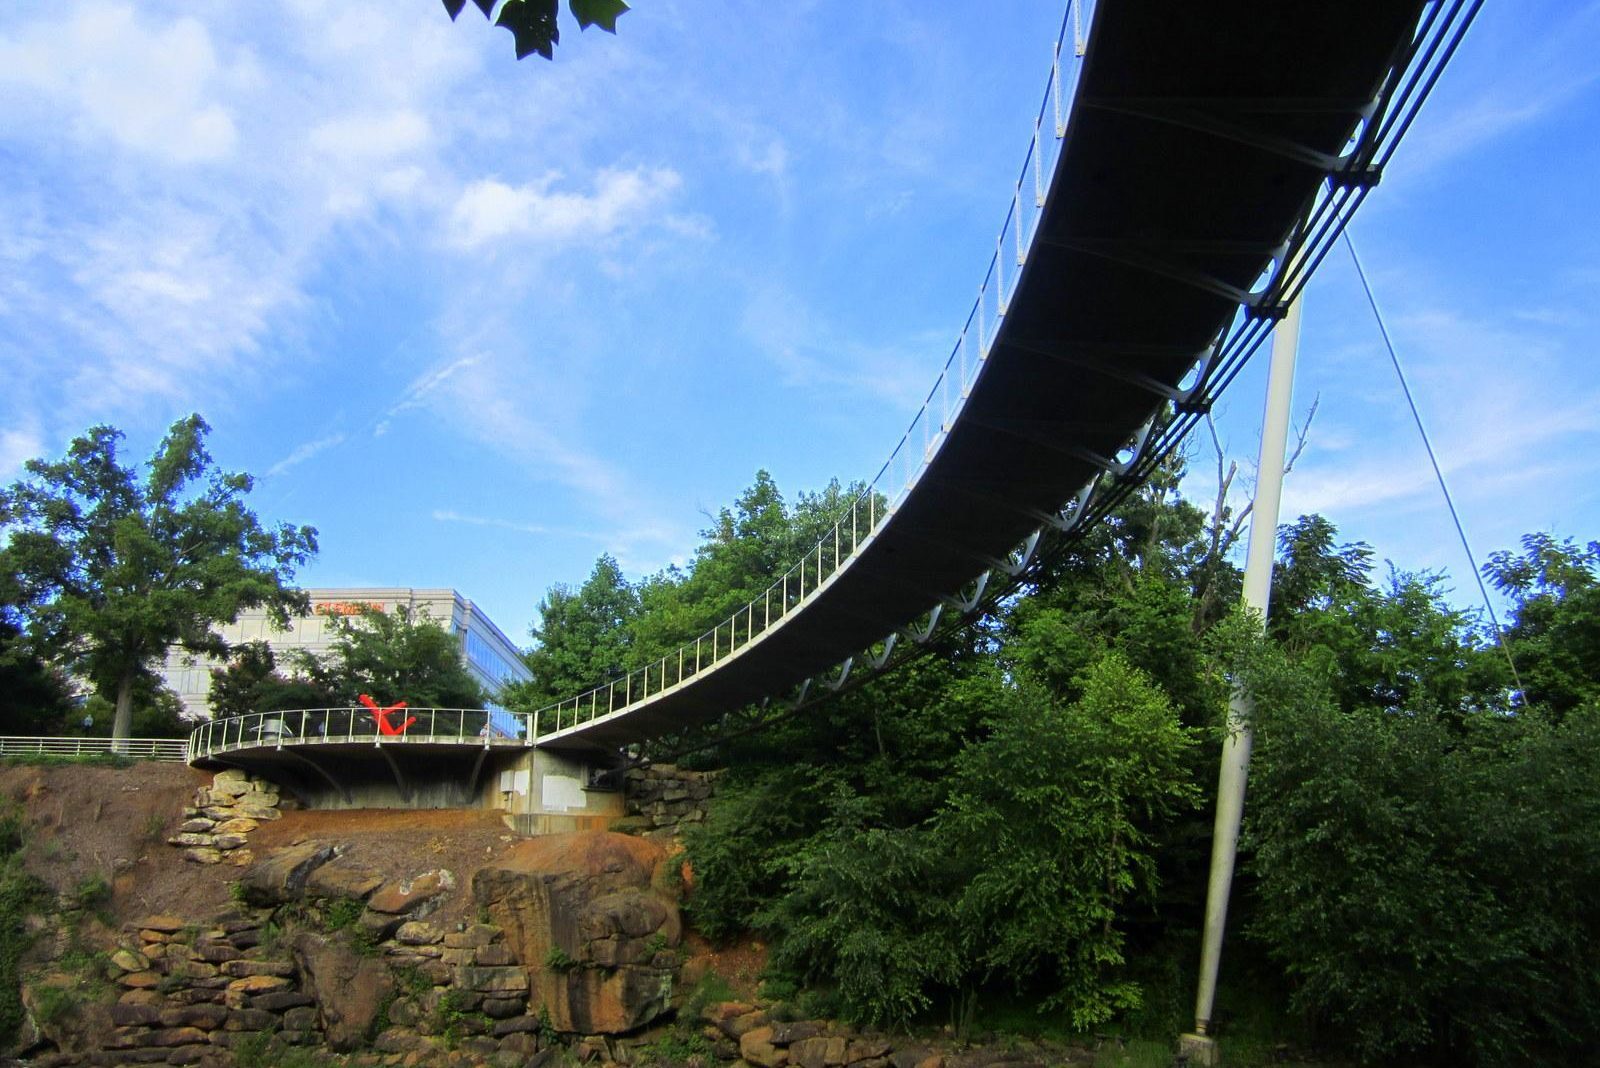 Bridge from below